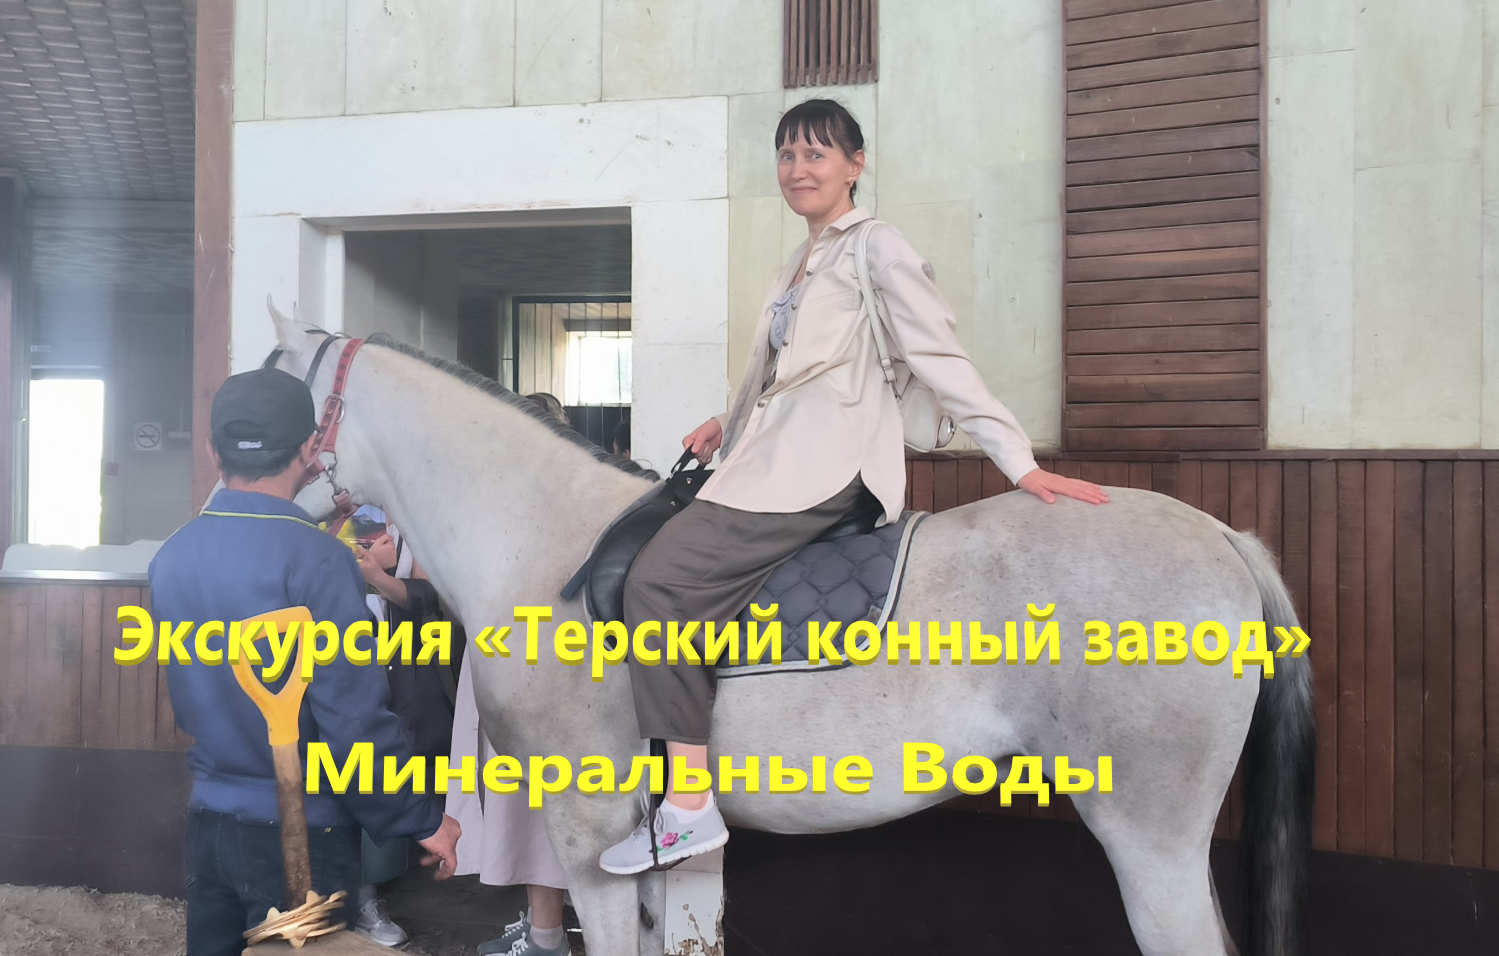 Экскурсия «Терский конный завод», Минеральные Воды.